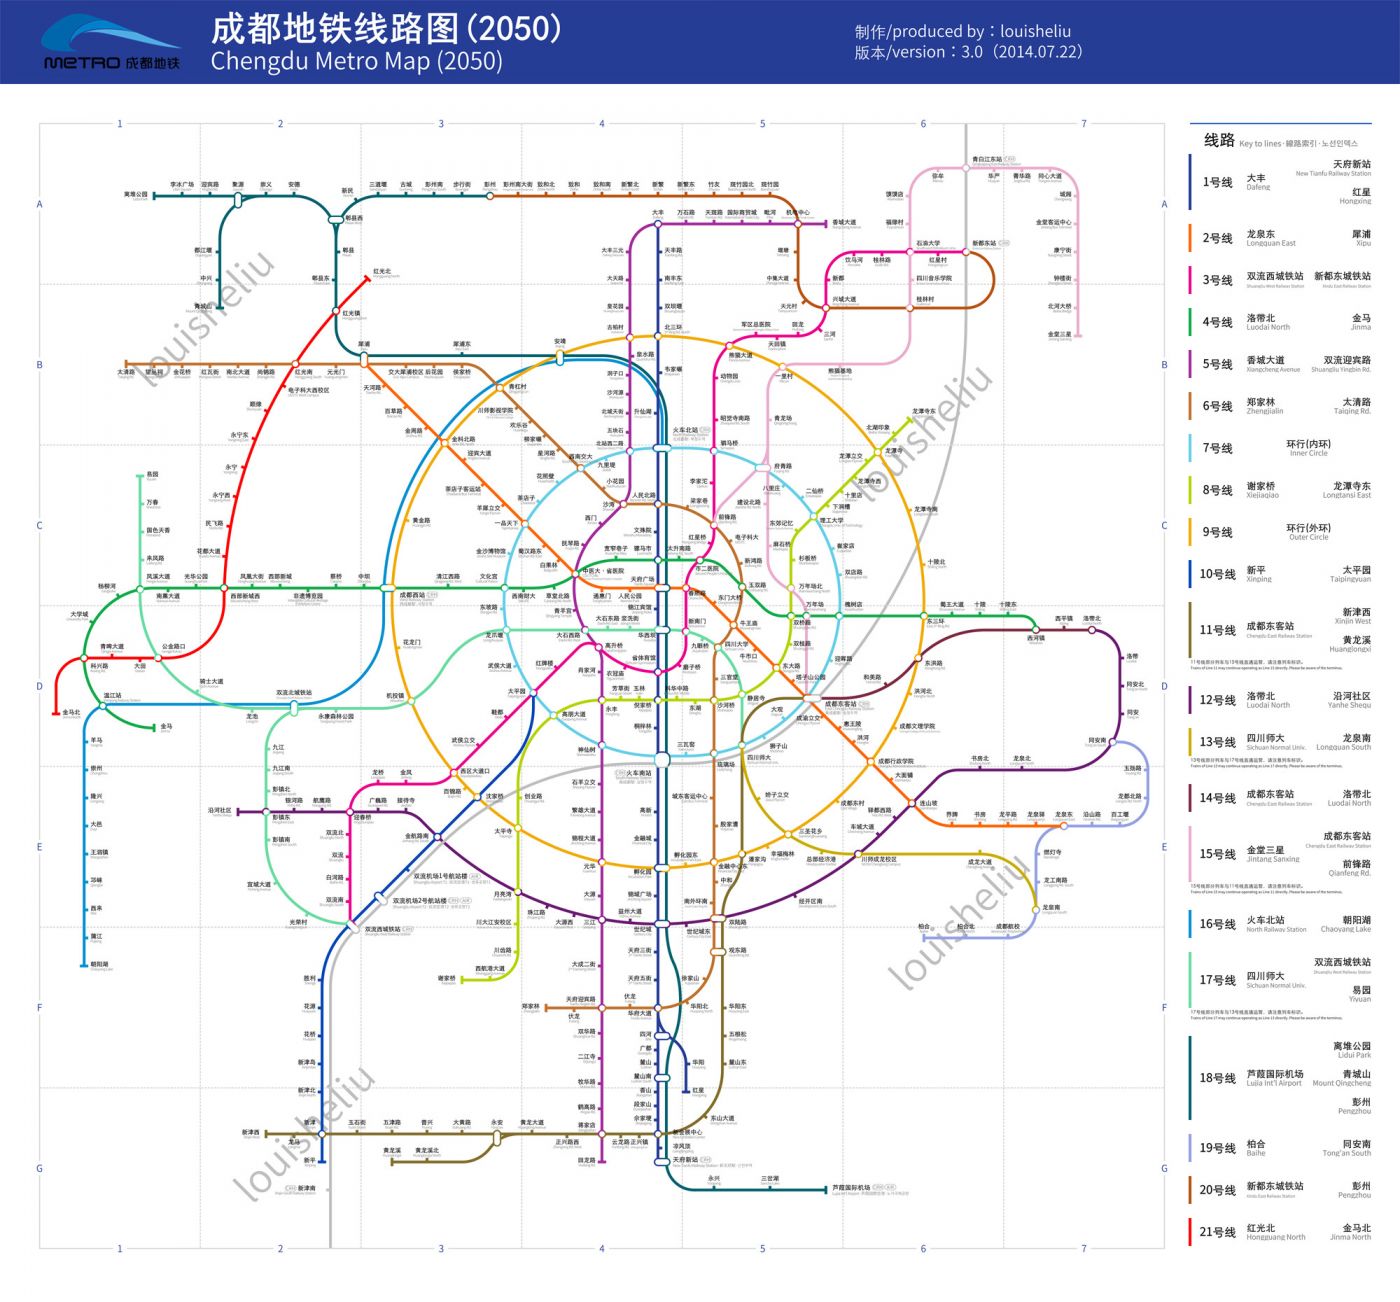 2050成都地铁规划及高清线路图(附下载地址)